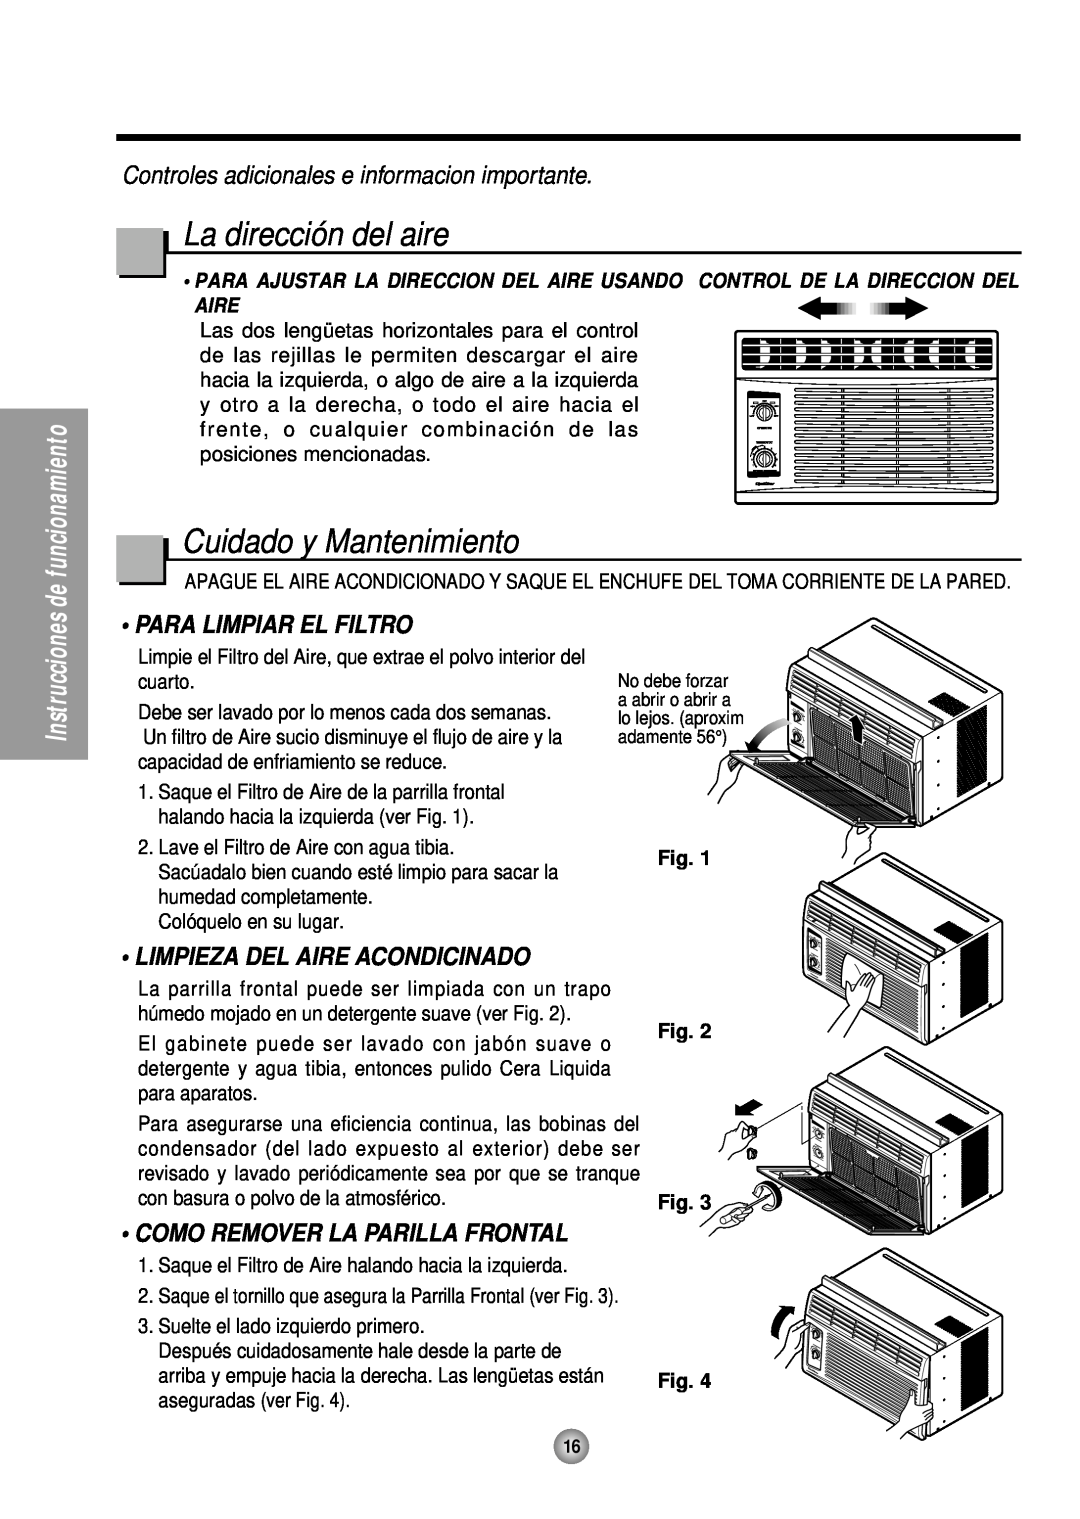 Panasonic HQ-2051TH manual La dirección del aire, Cuidado y Mantenimiento, Controles adicionales e informacion importante 